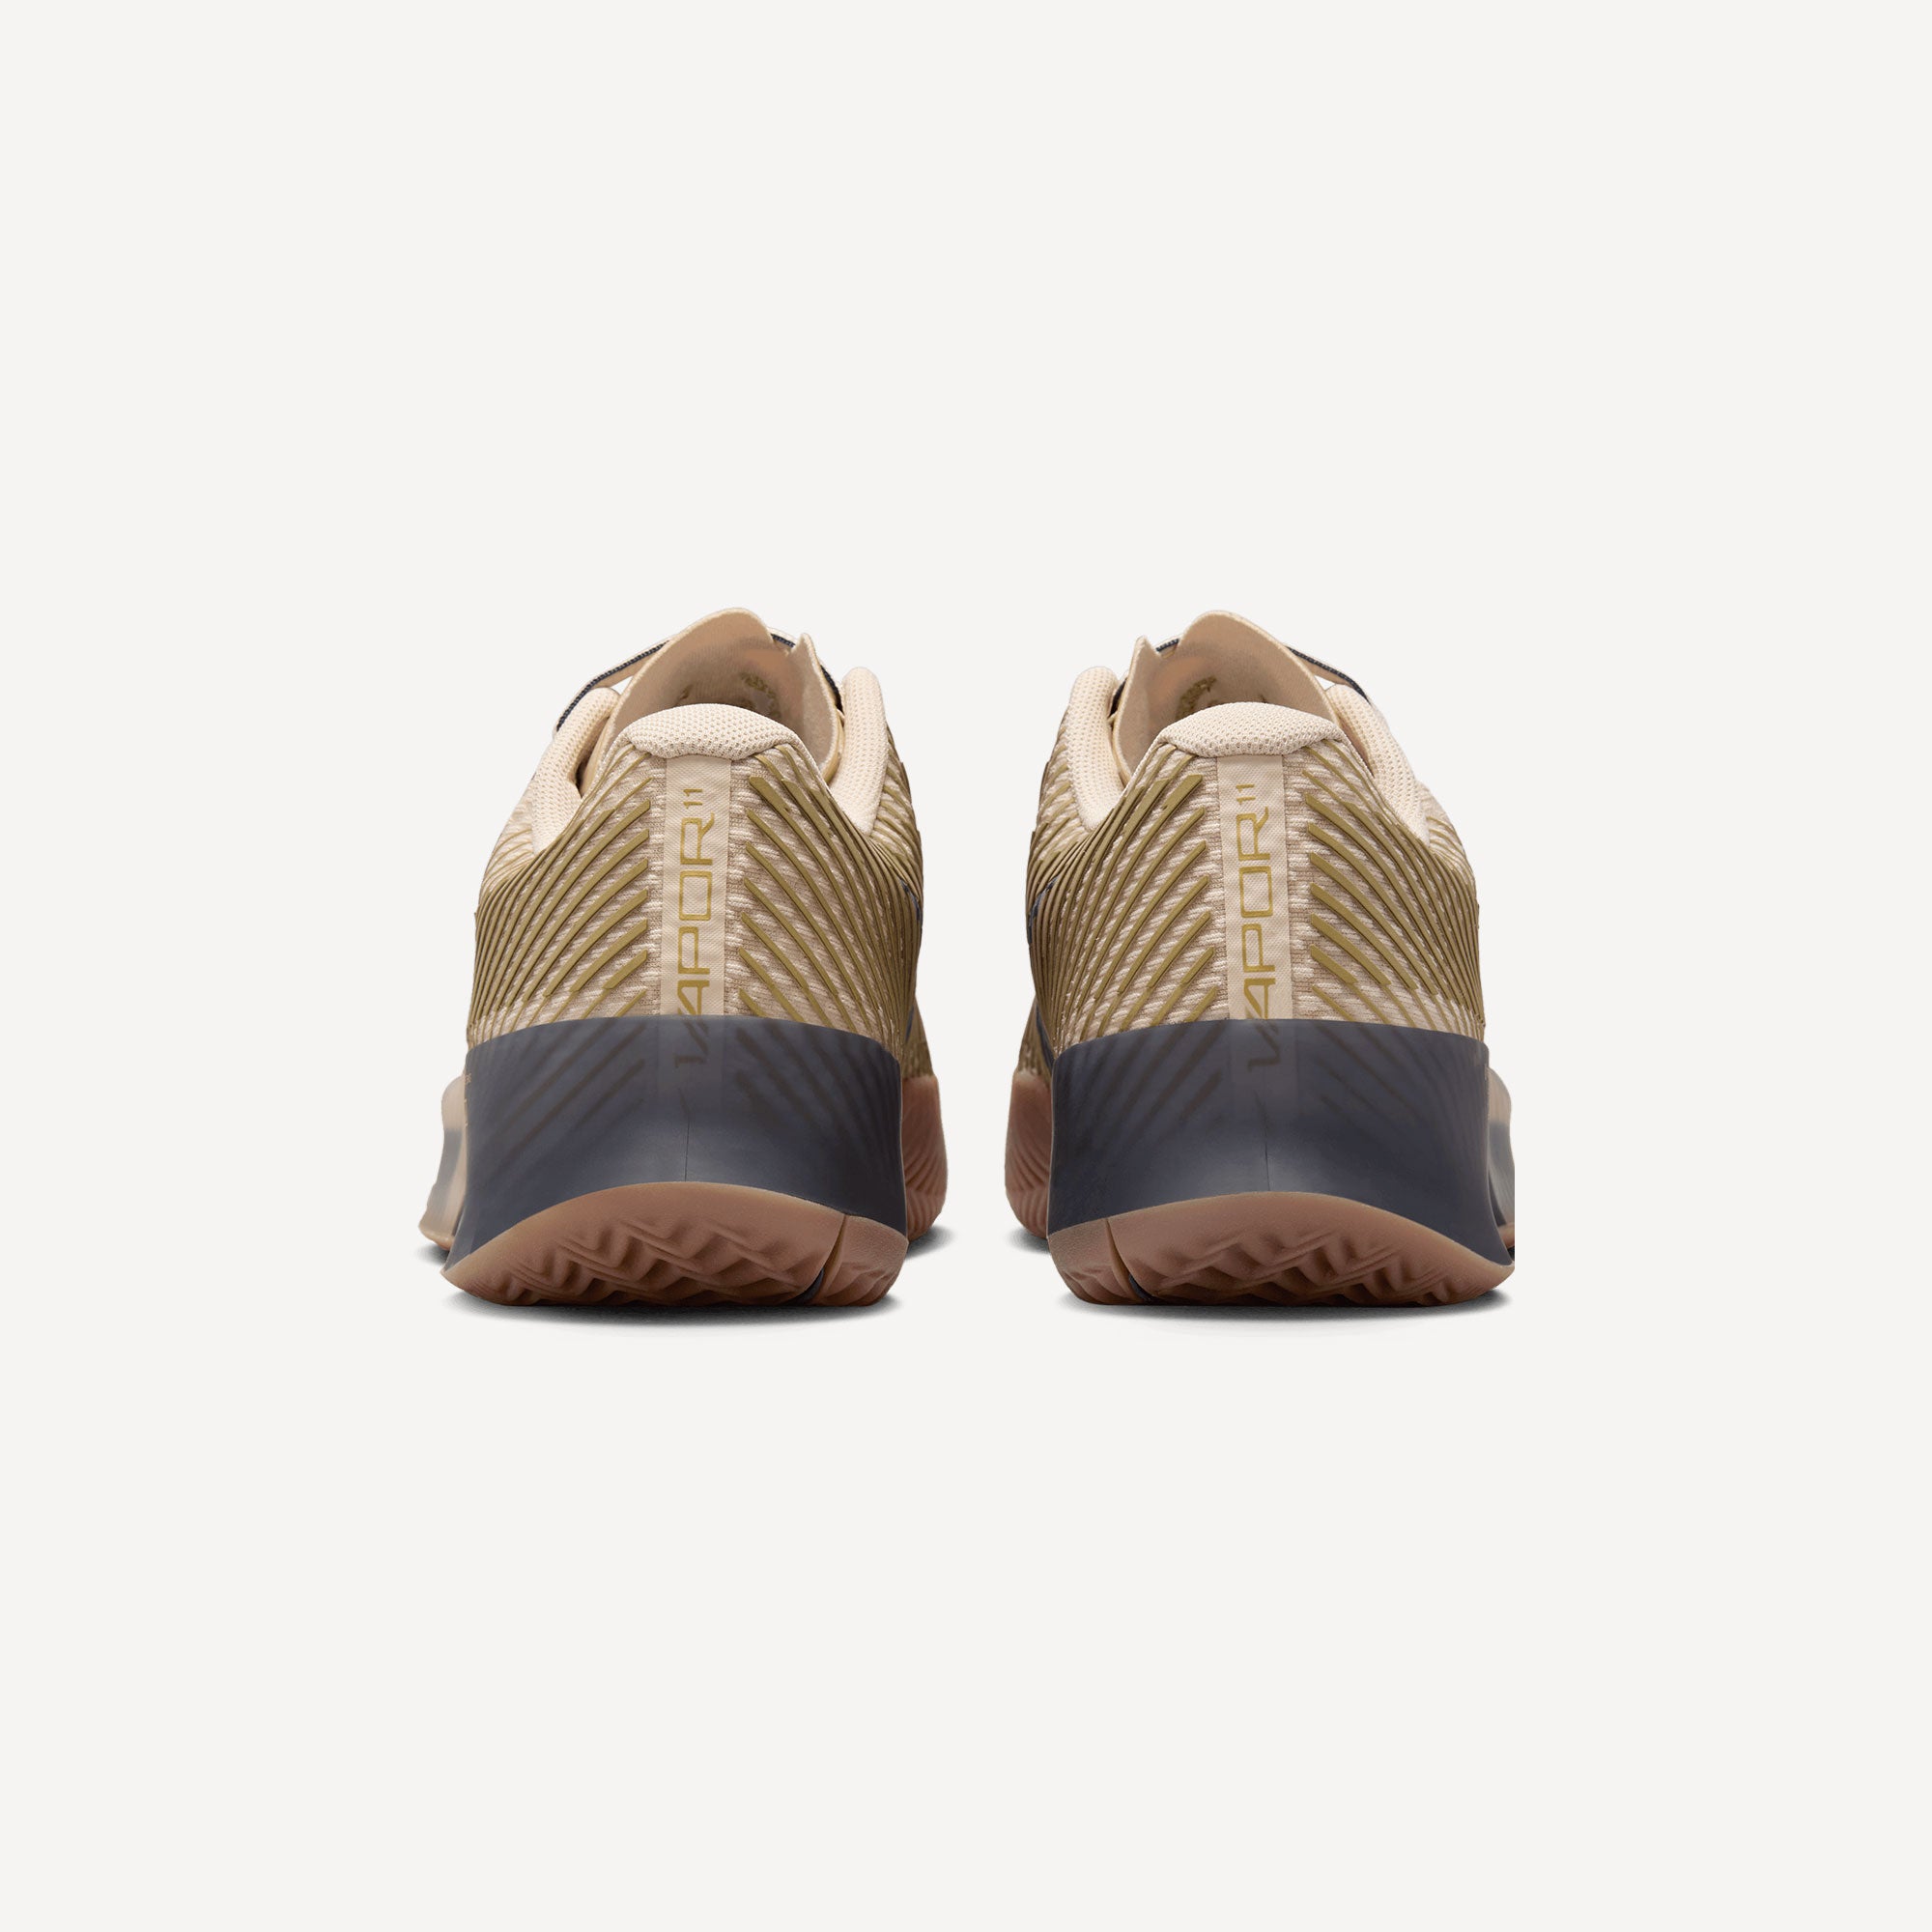 NikeCourt Air Zoom Vapor 11 Premium Men's Clay Court Tennis Shoes - Sand (5)